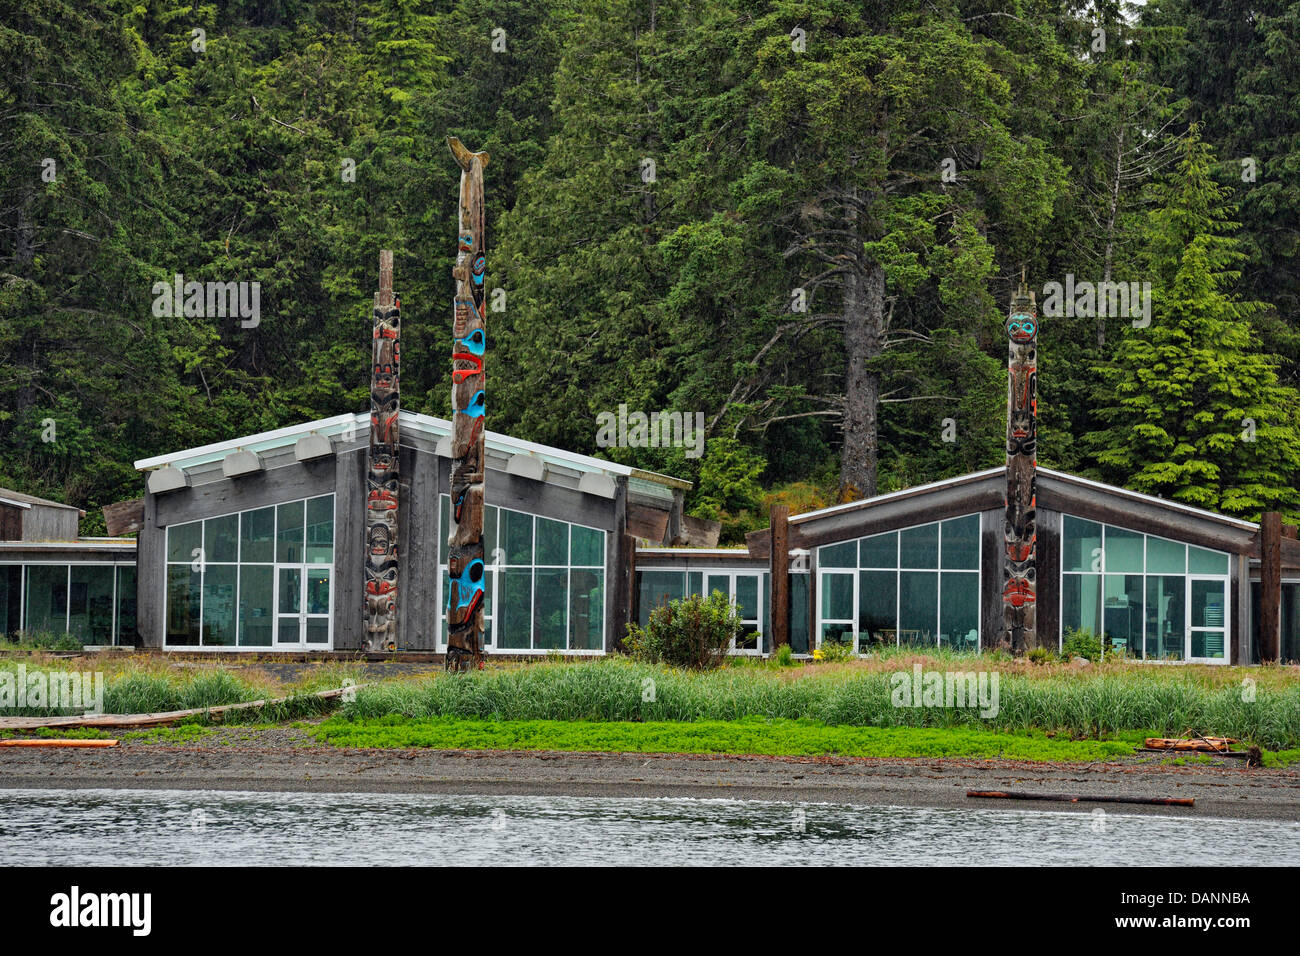 Musée Haida et mâts de façade de l'Inlet Skidegate Haida Gwaii Queen Charlotte Islands- Colombie-Britannique Canada Skidegate Banque D'Images